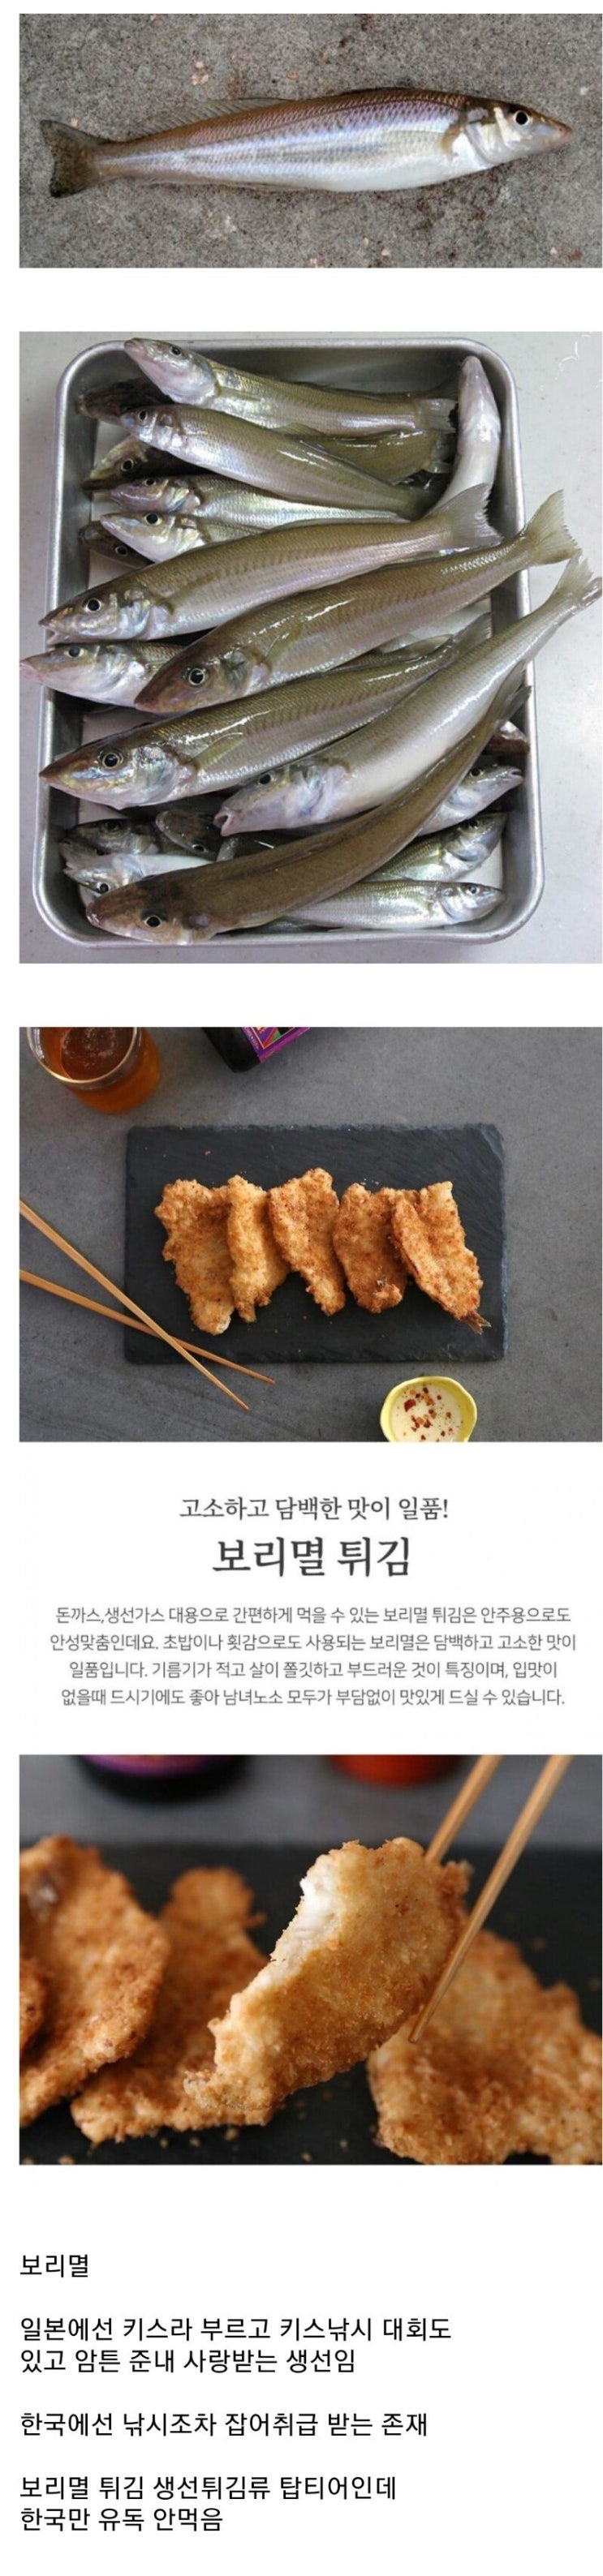 한국에서만 잘 안먹는 생선, 보리멸